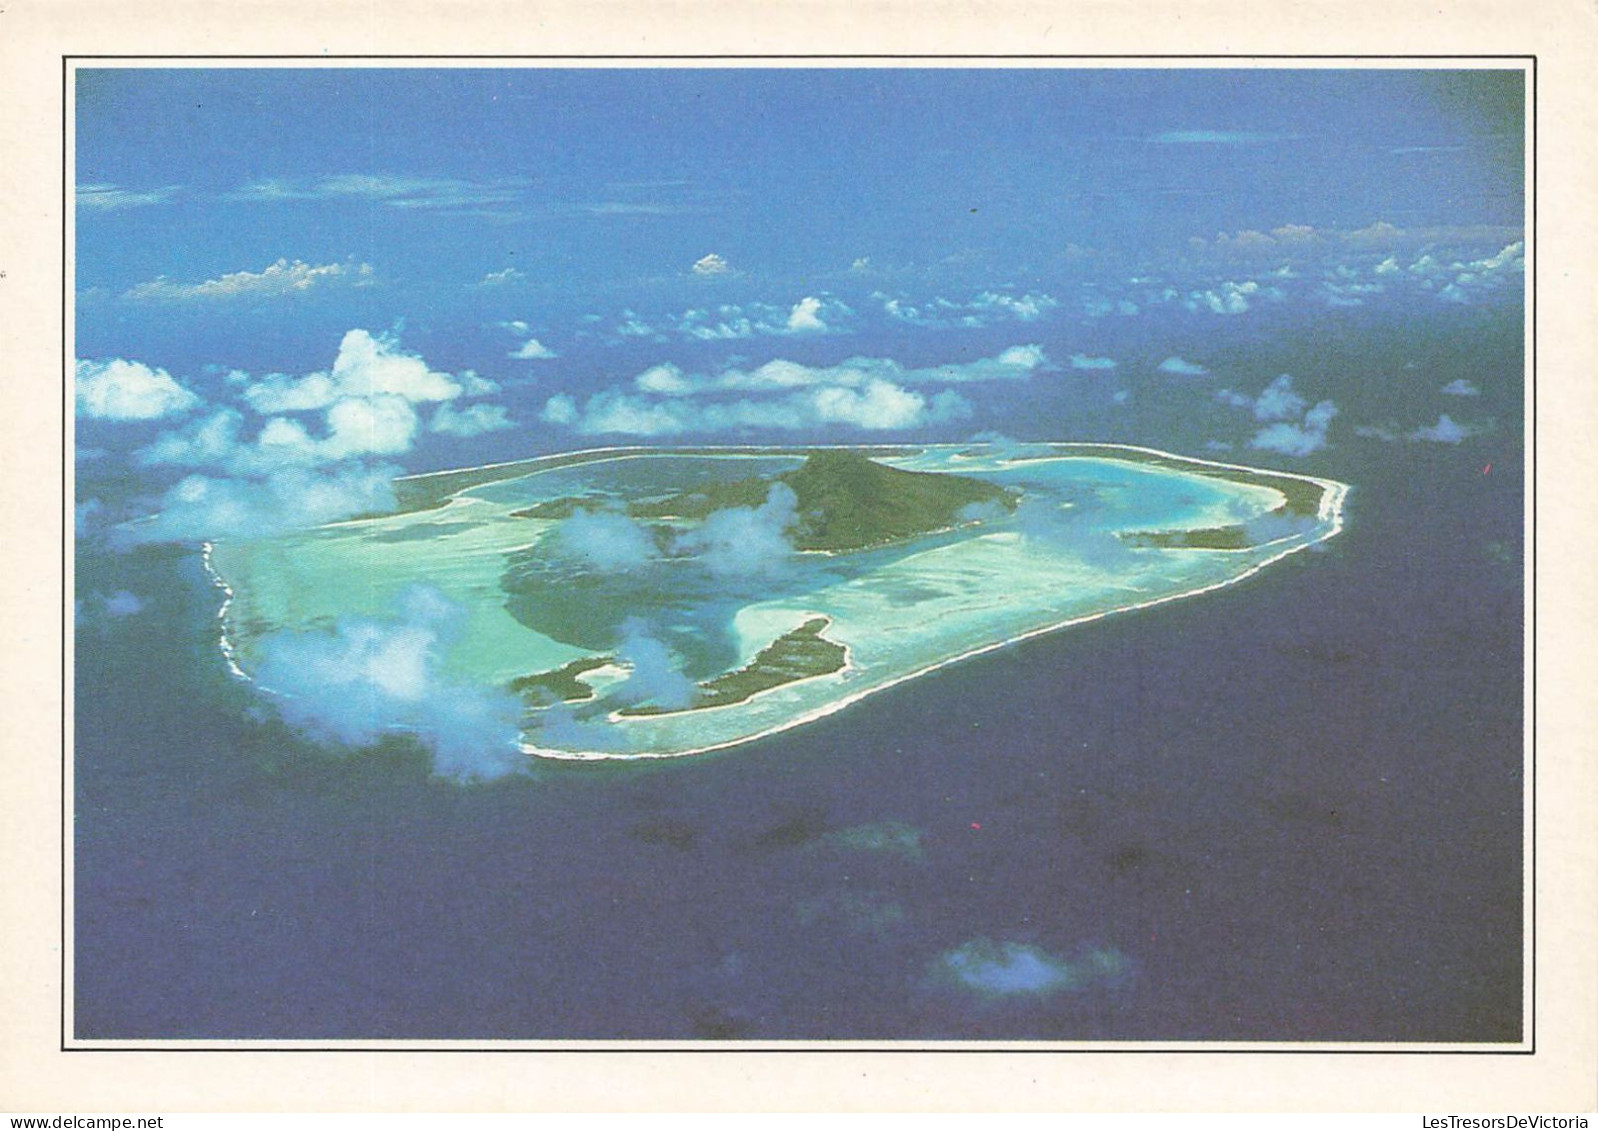 POLYNESIE FRANCAISE - Maupiti - L'île Vue Du Ciel - Colorisé - Carte Postale - Polinesia Francesa